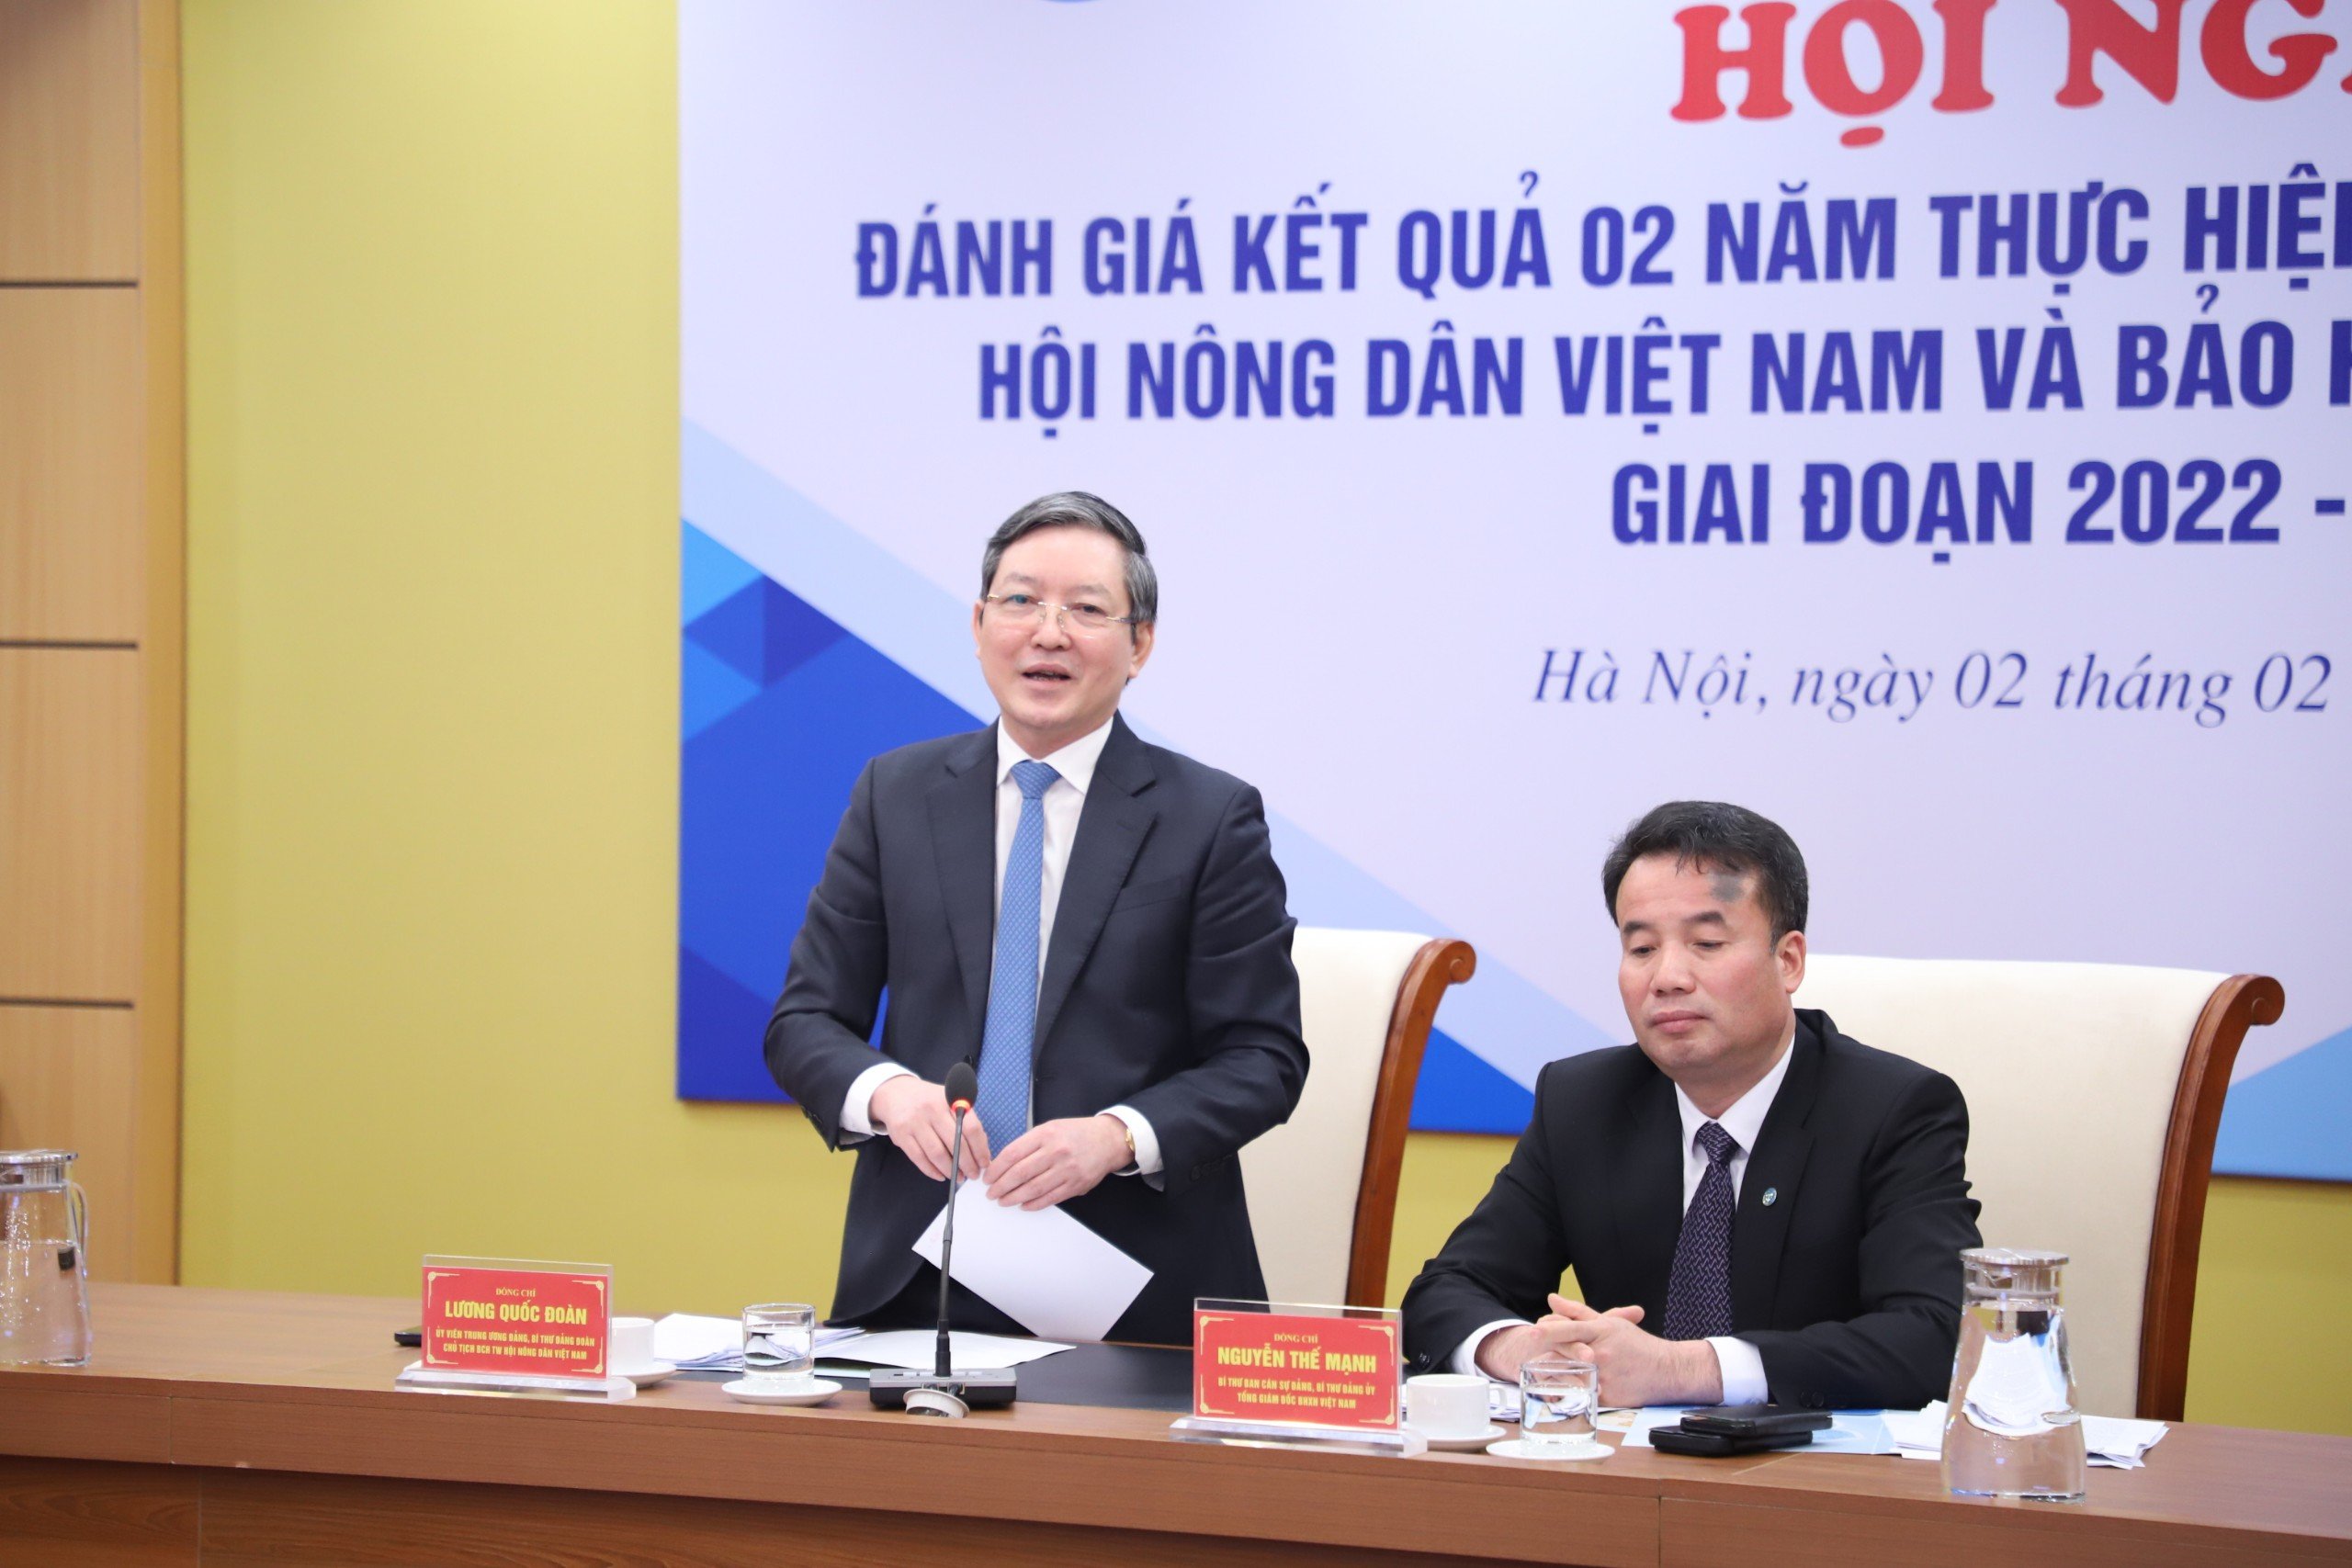 Hội Nông dân Việt Nam, BHXH Việt Nam tổ chức đánh giá kết quả 2 năm thực hiện quy chế phối hợp- Ảnh 4.